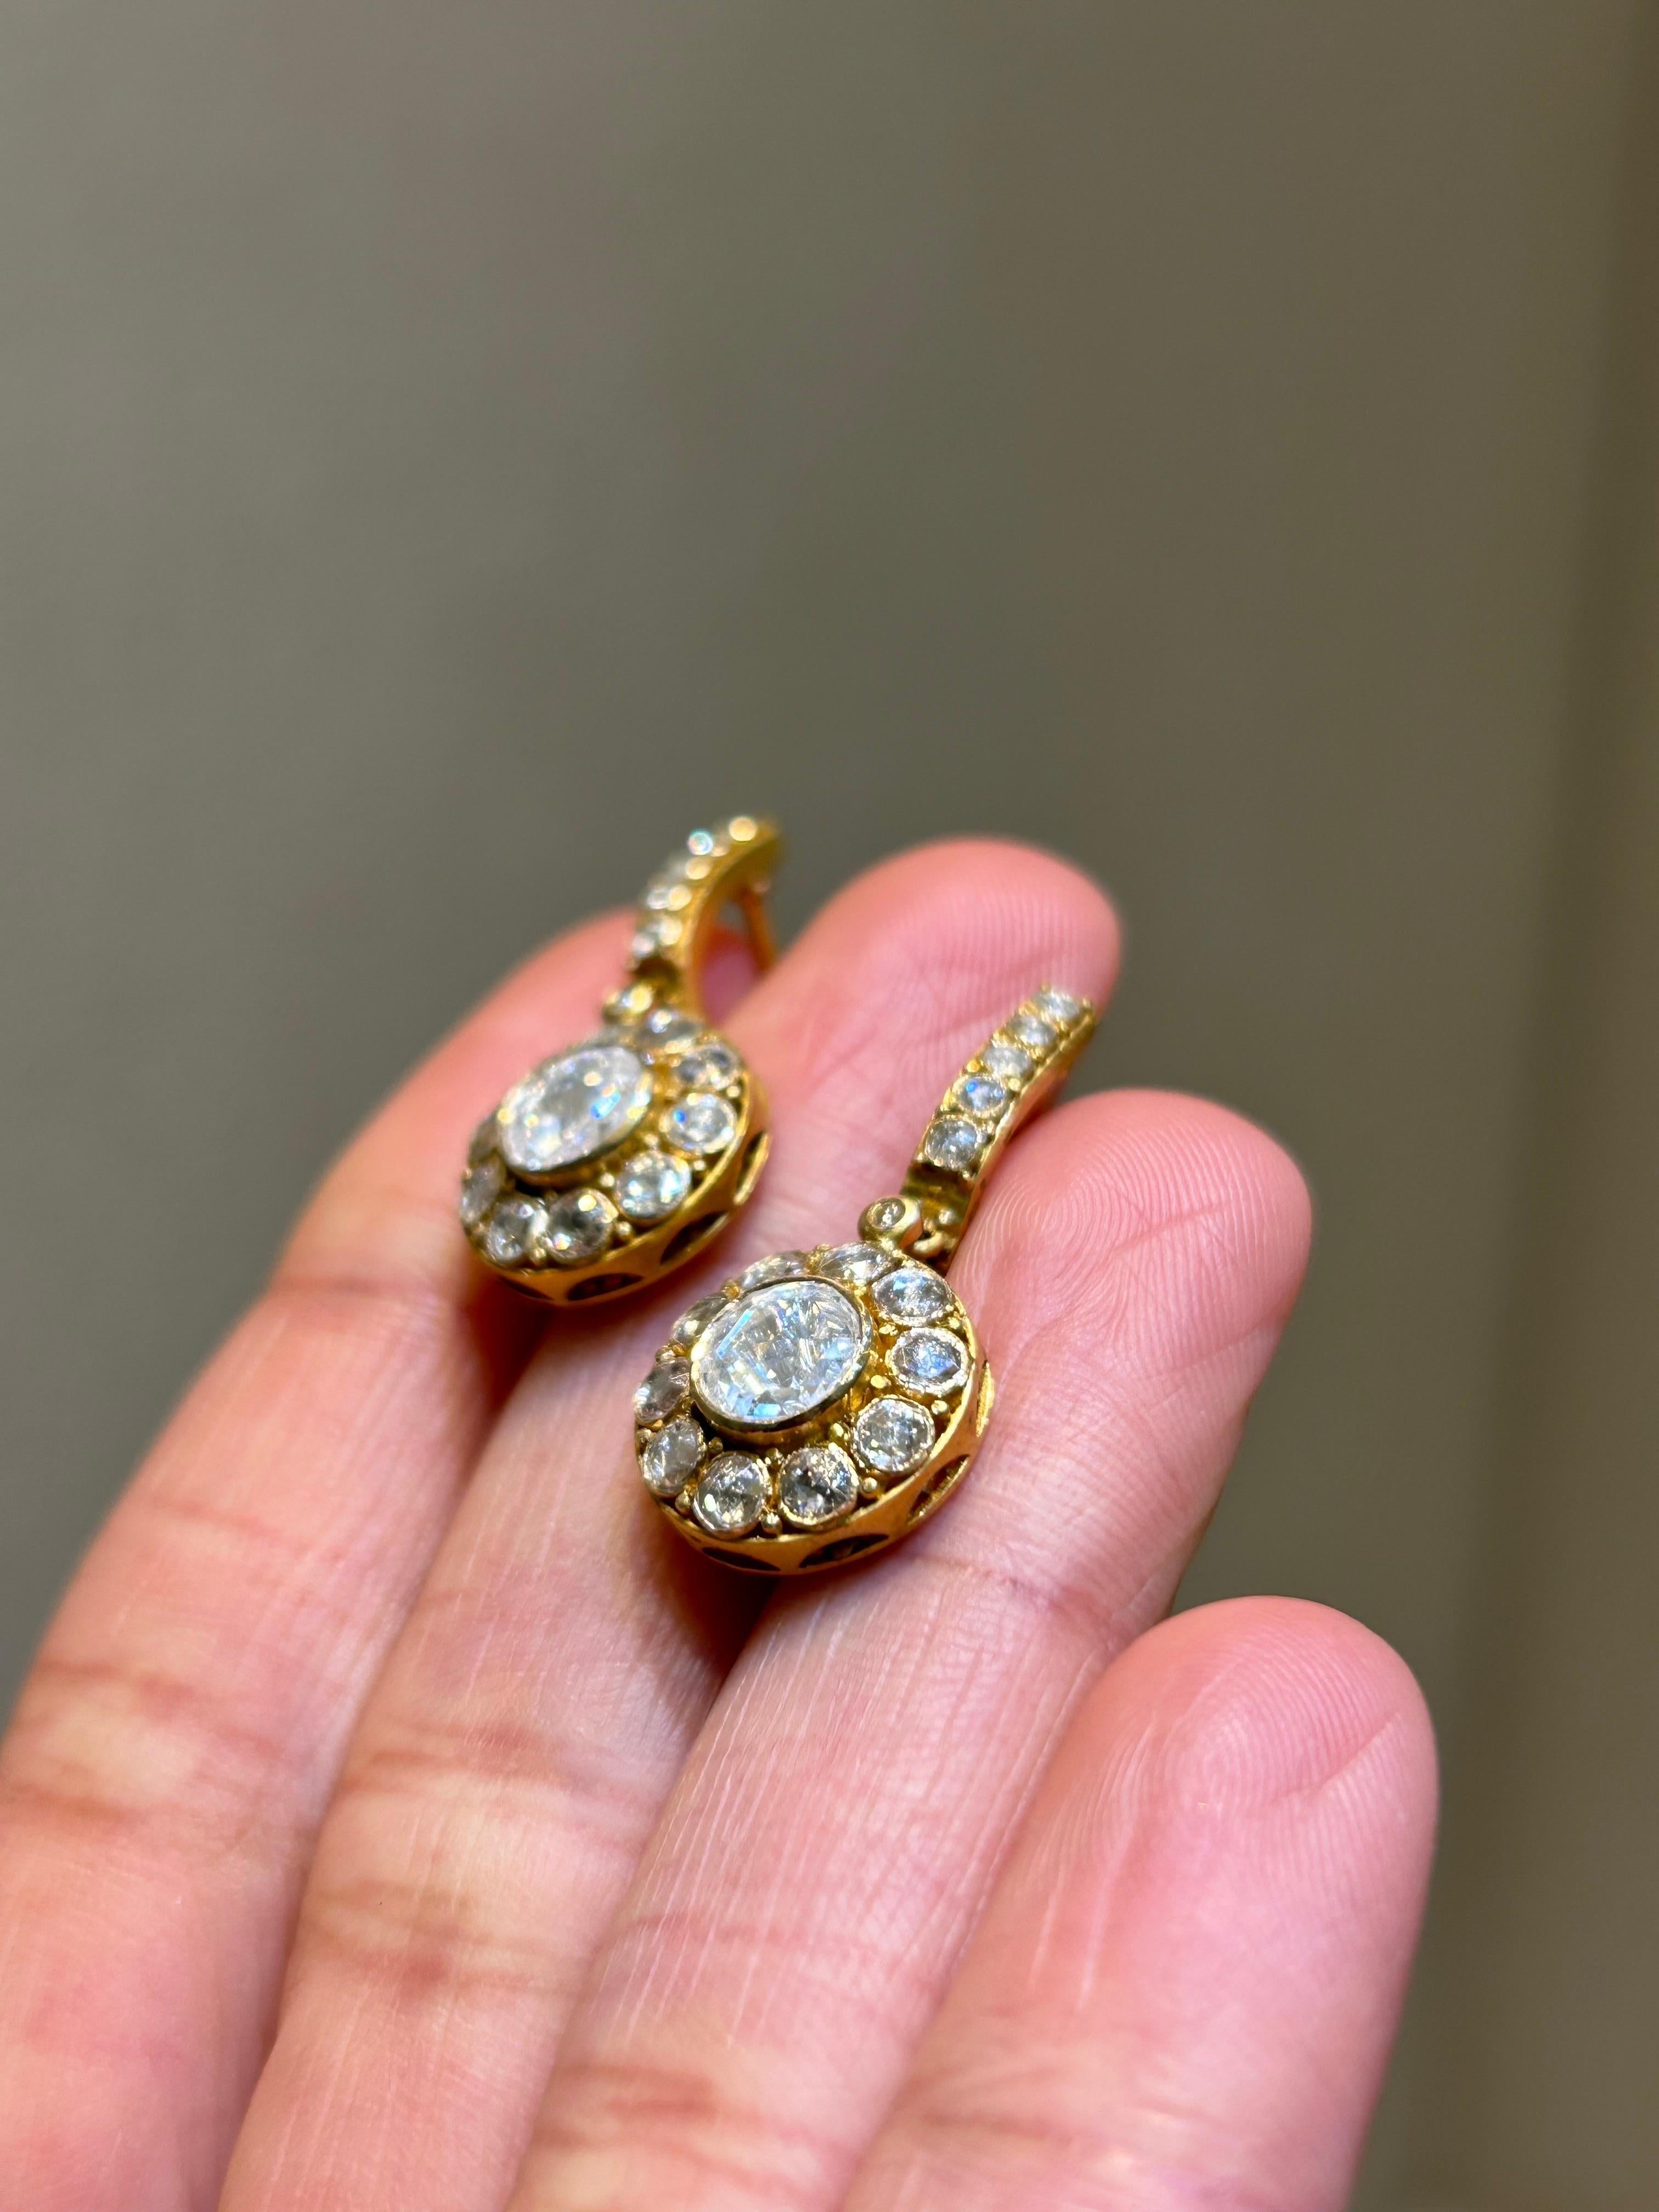 Boucles d'oreilles pendantes en or jaune 18 carats de 2,03 carats de diamant au total, d'aspect antique. Le diamant central de taille rose pèse 1,11 carat (environ 0,55 carat chacun), entouré de diamants de taille rose de plus petite taille. Ces